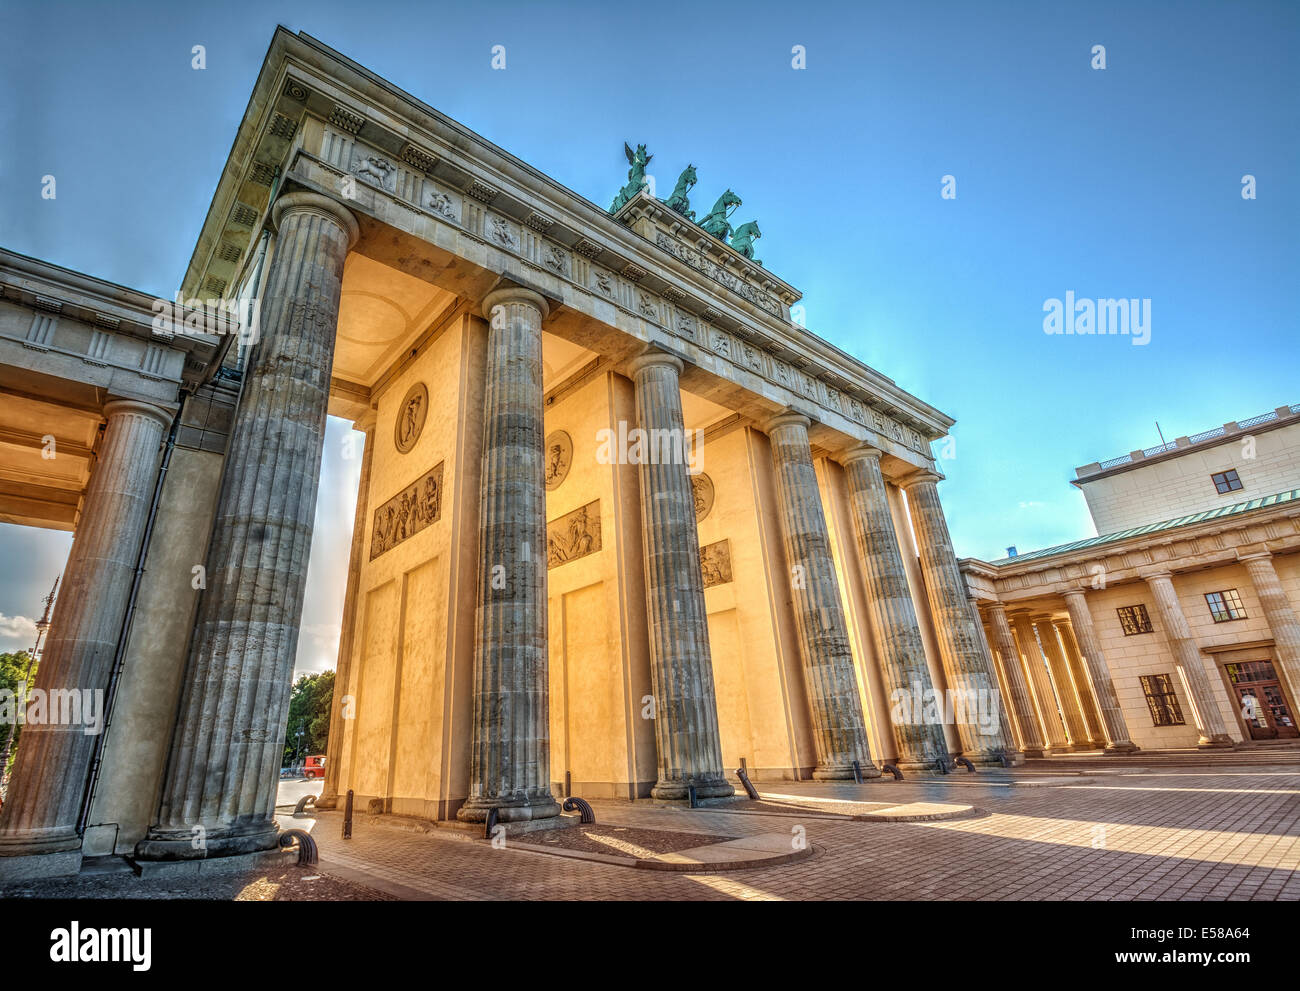 Porte de Brandebourg (1788) au coucher du soleil, Berlin, Allemagne. Image HDR. Banque D'Images